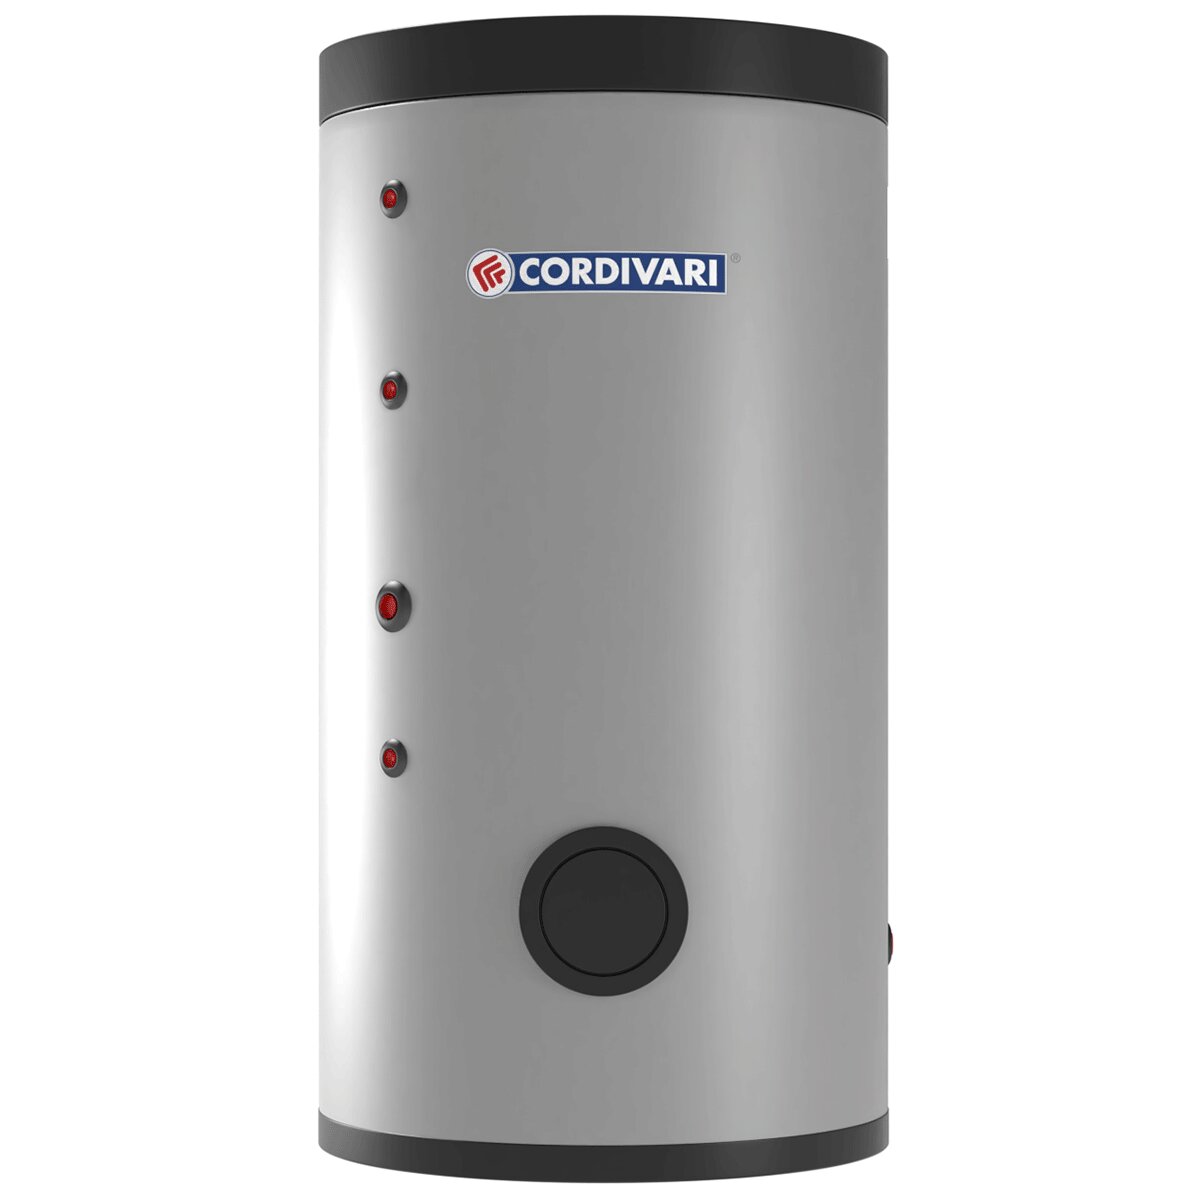 Cordivari BOLLY 2 XL WB Wasserkessel für sanitäres Warmwasser mit 2 festen Wärmetauschern 500 Liter